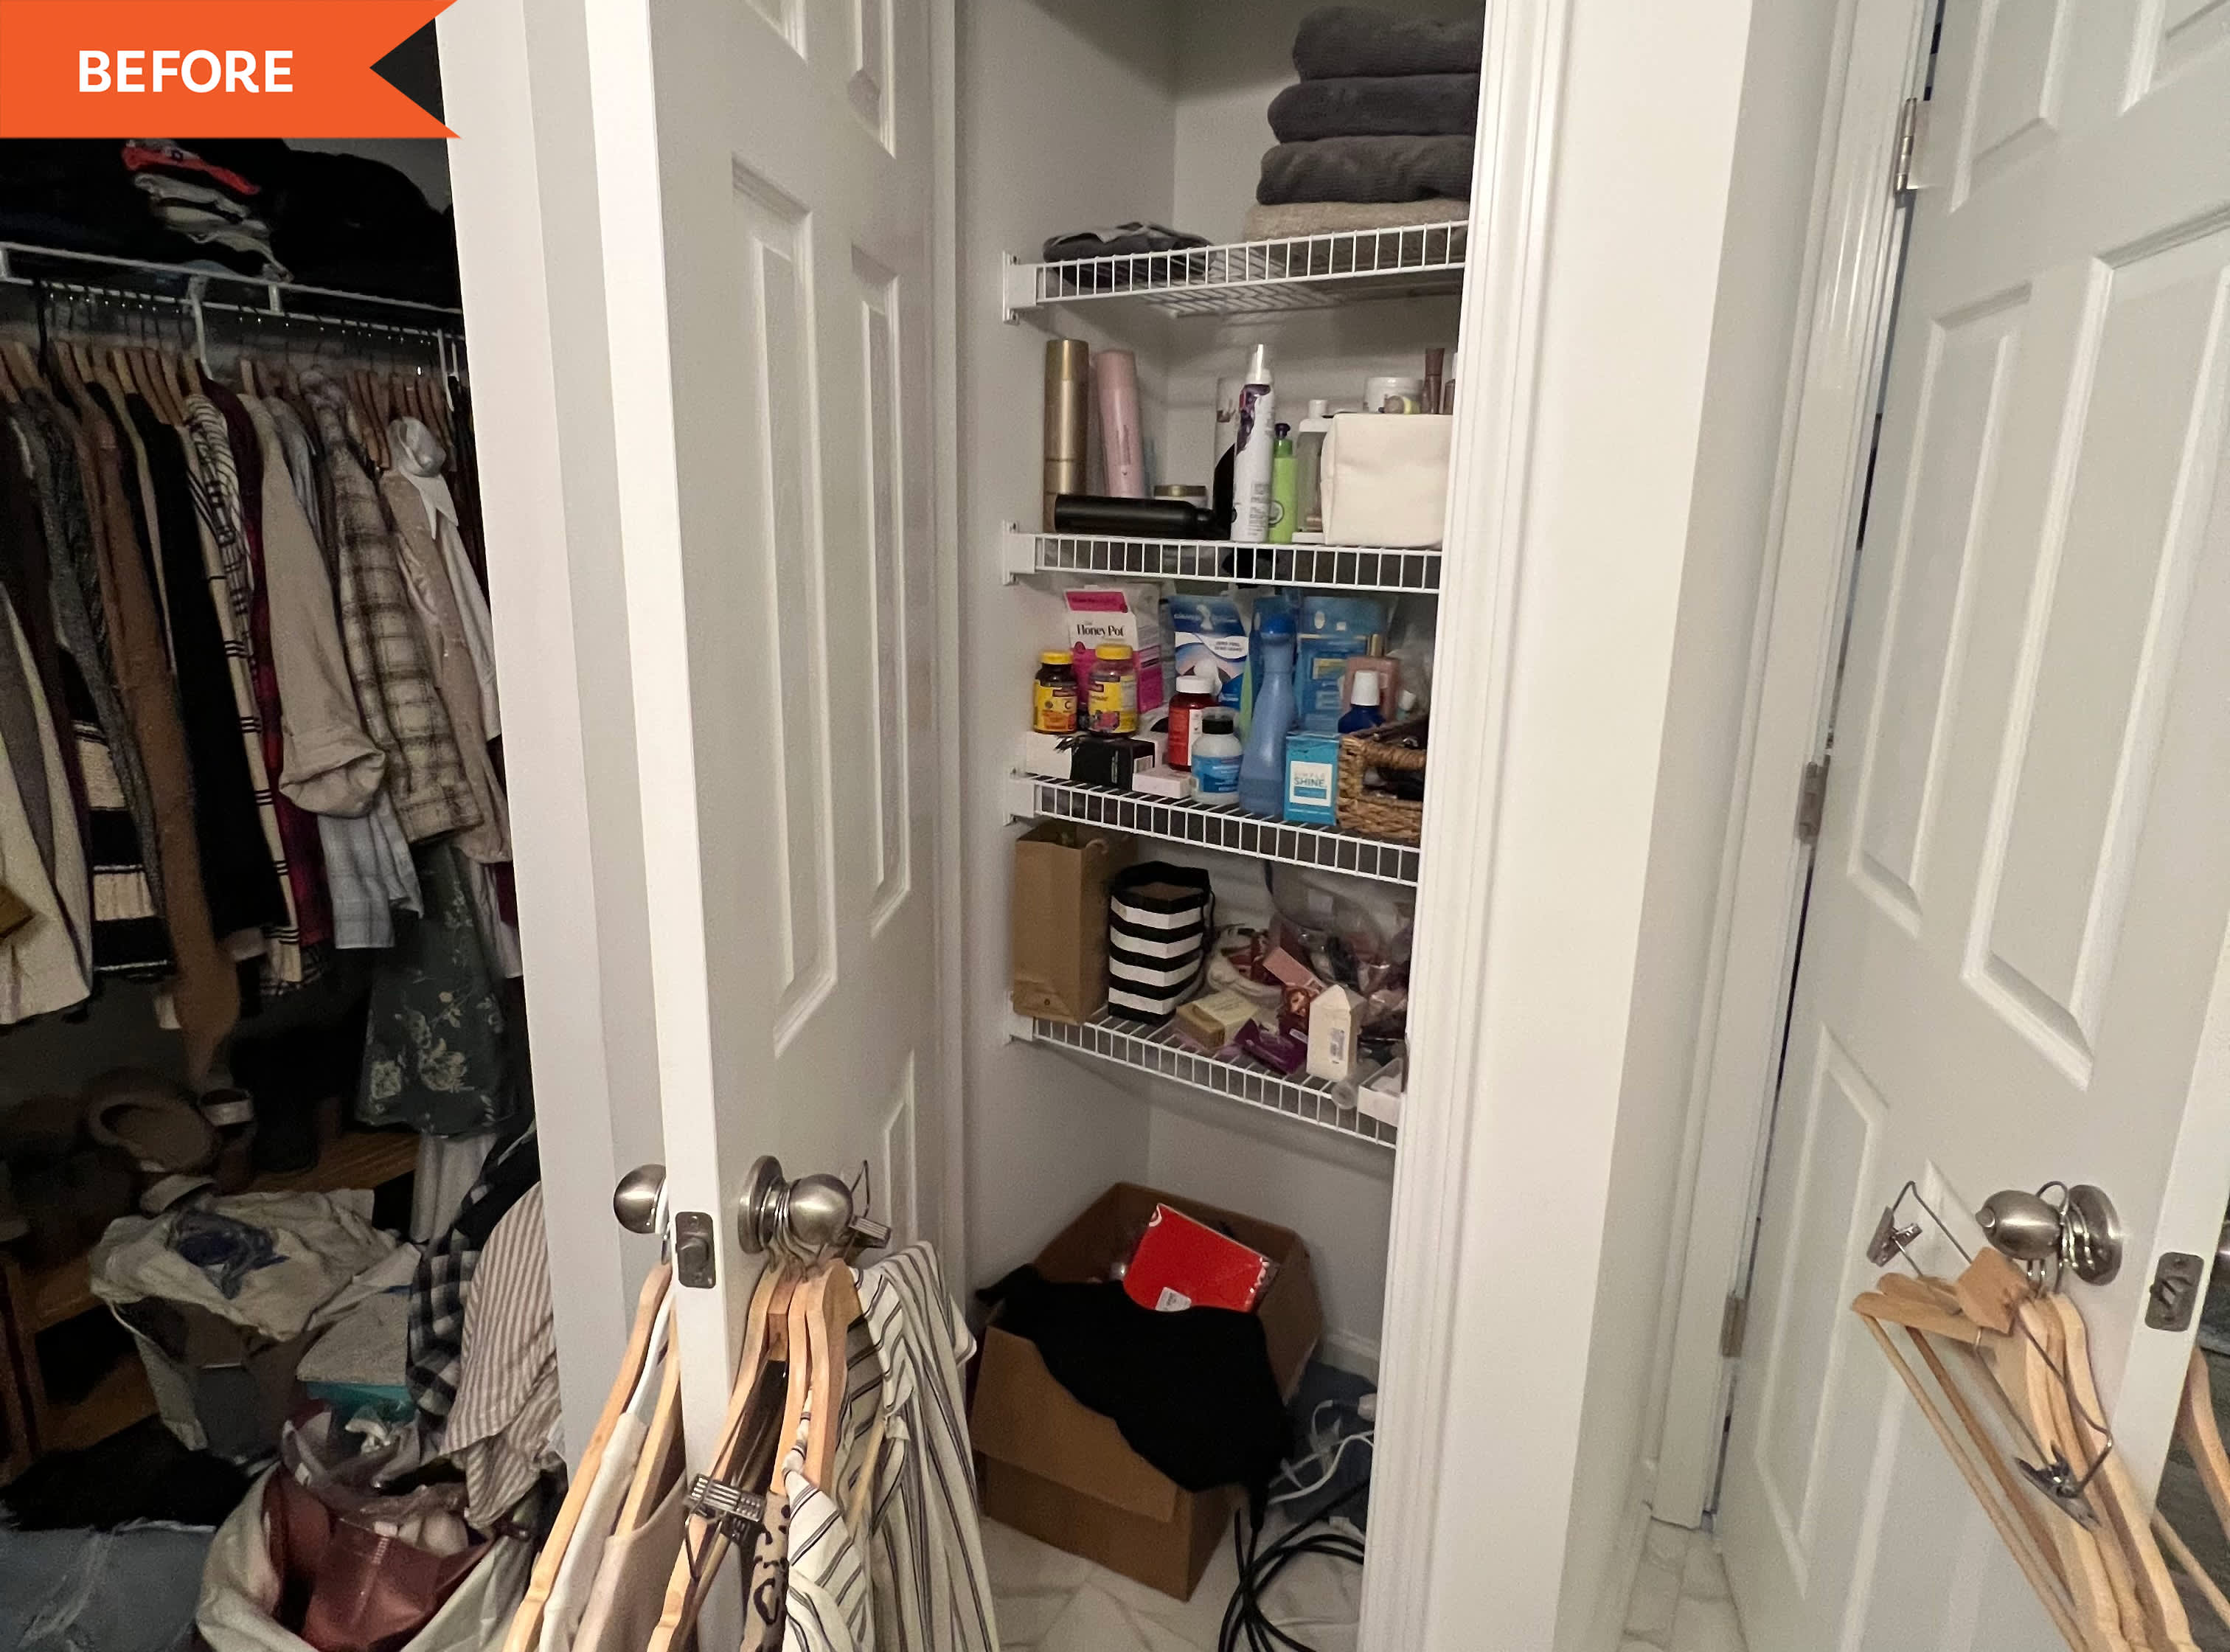 10 Linen Closet Organization Ideas for a Clutter-Free Closet! - Driven by  Decor